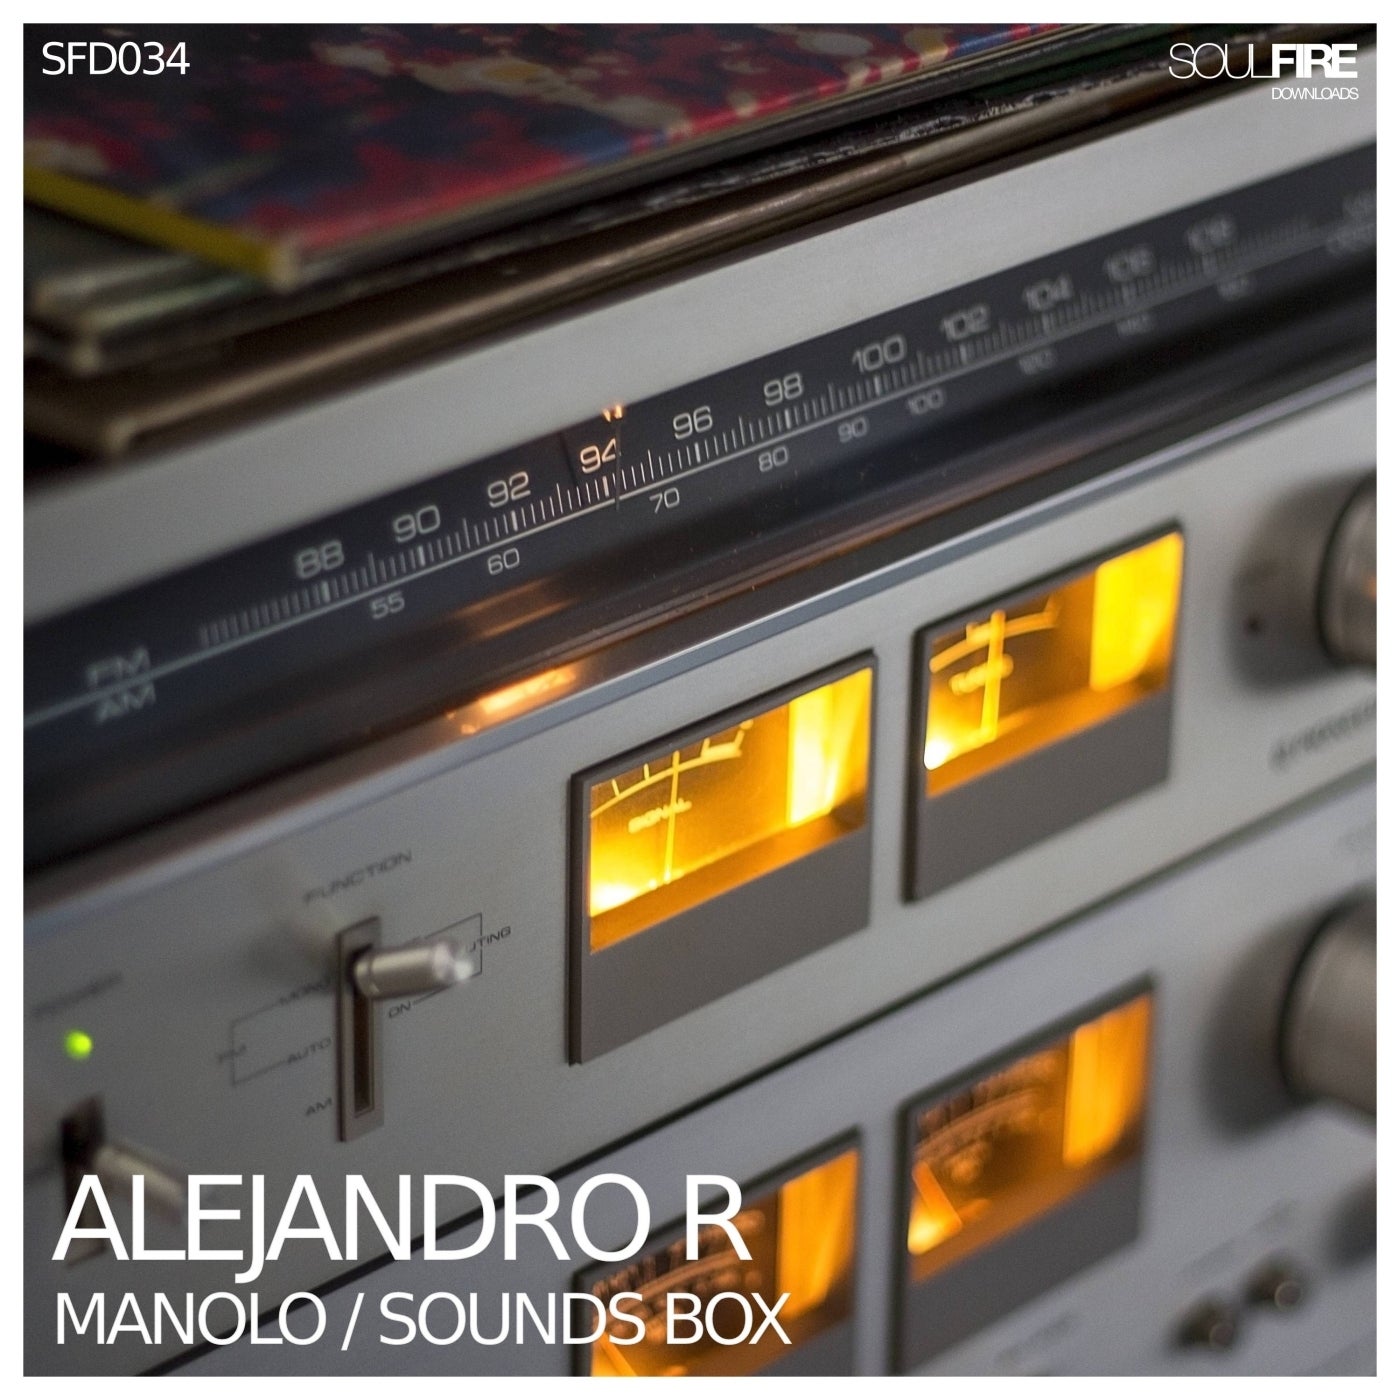 Manolo / Sounds Box